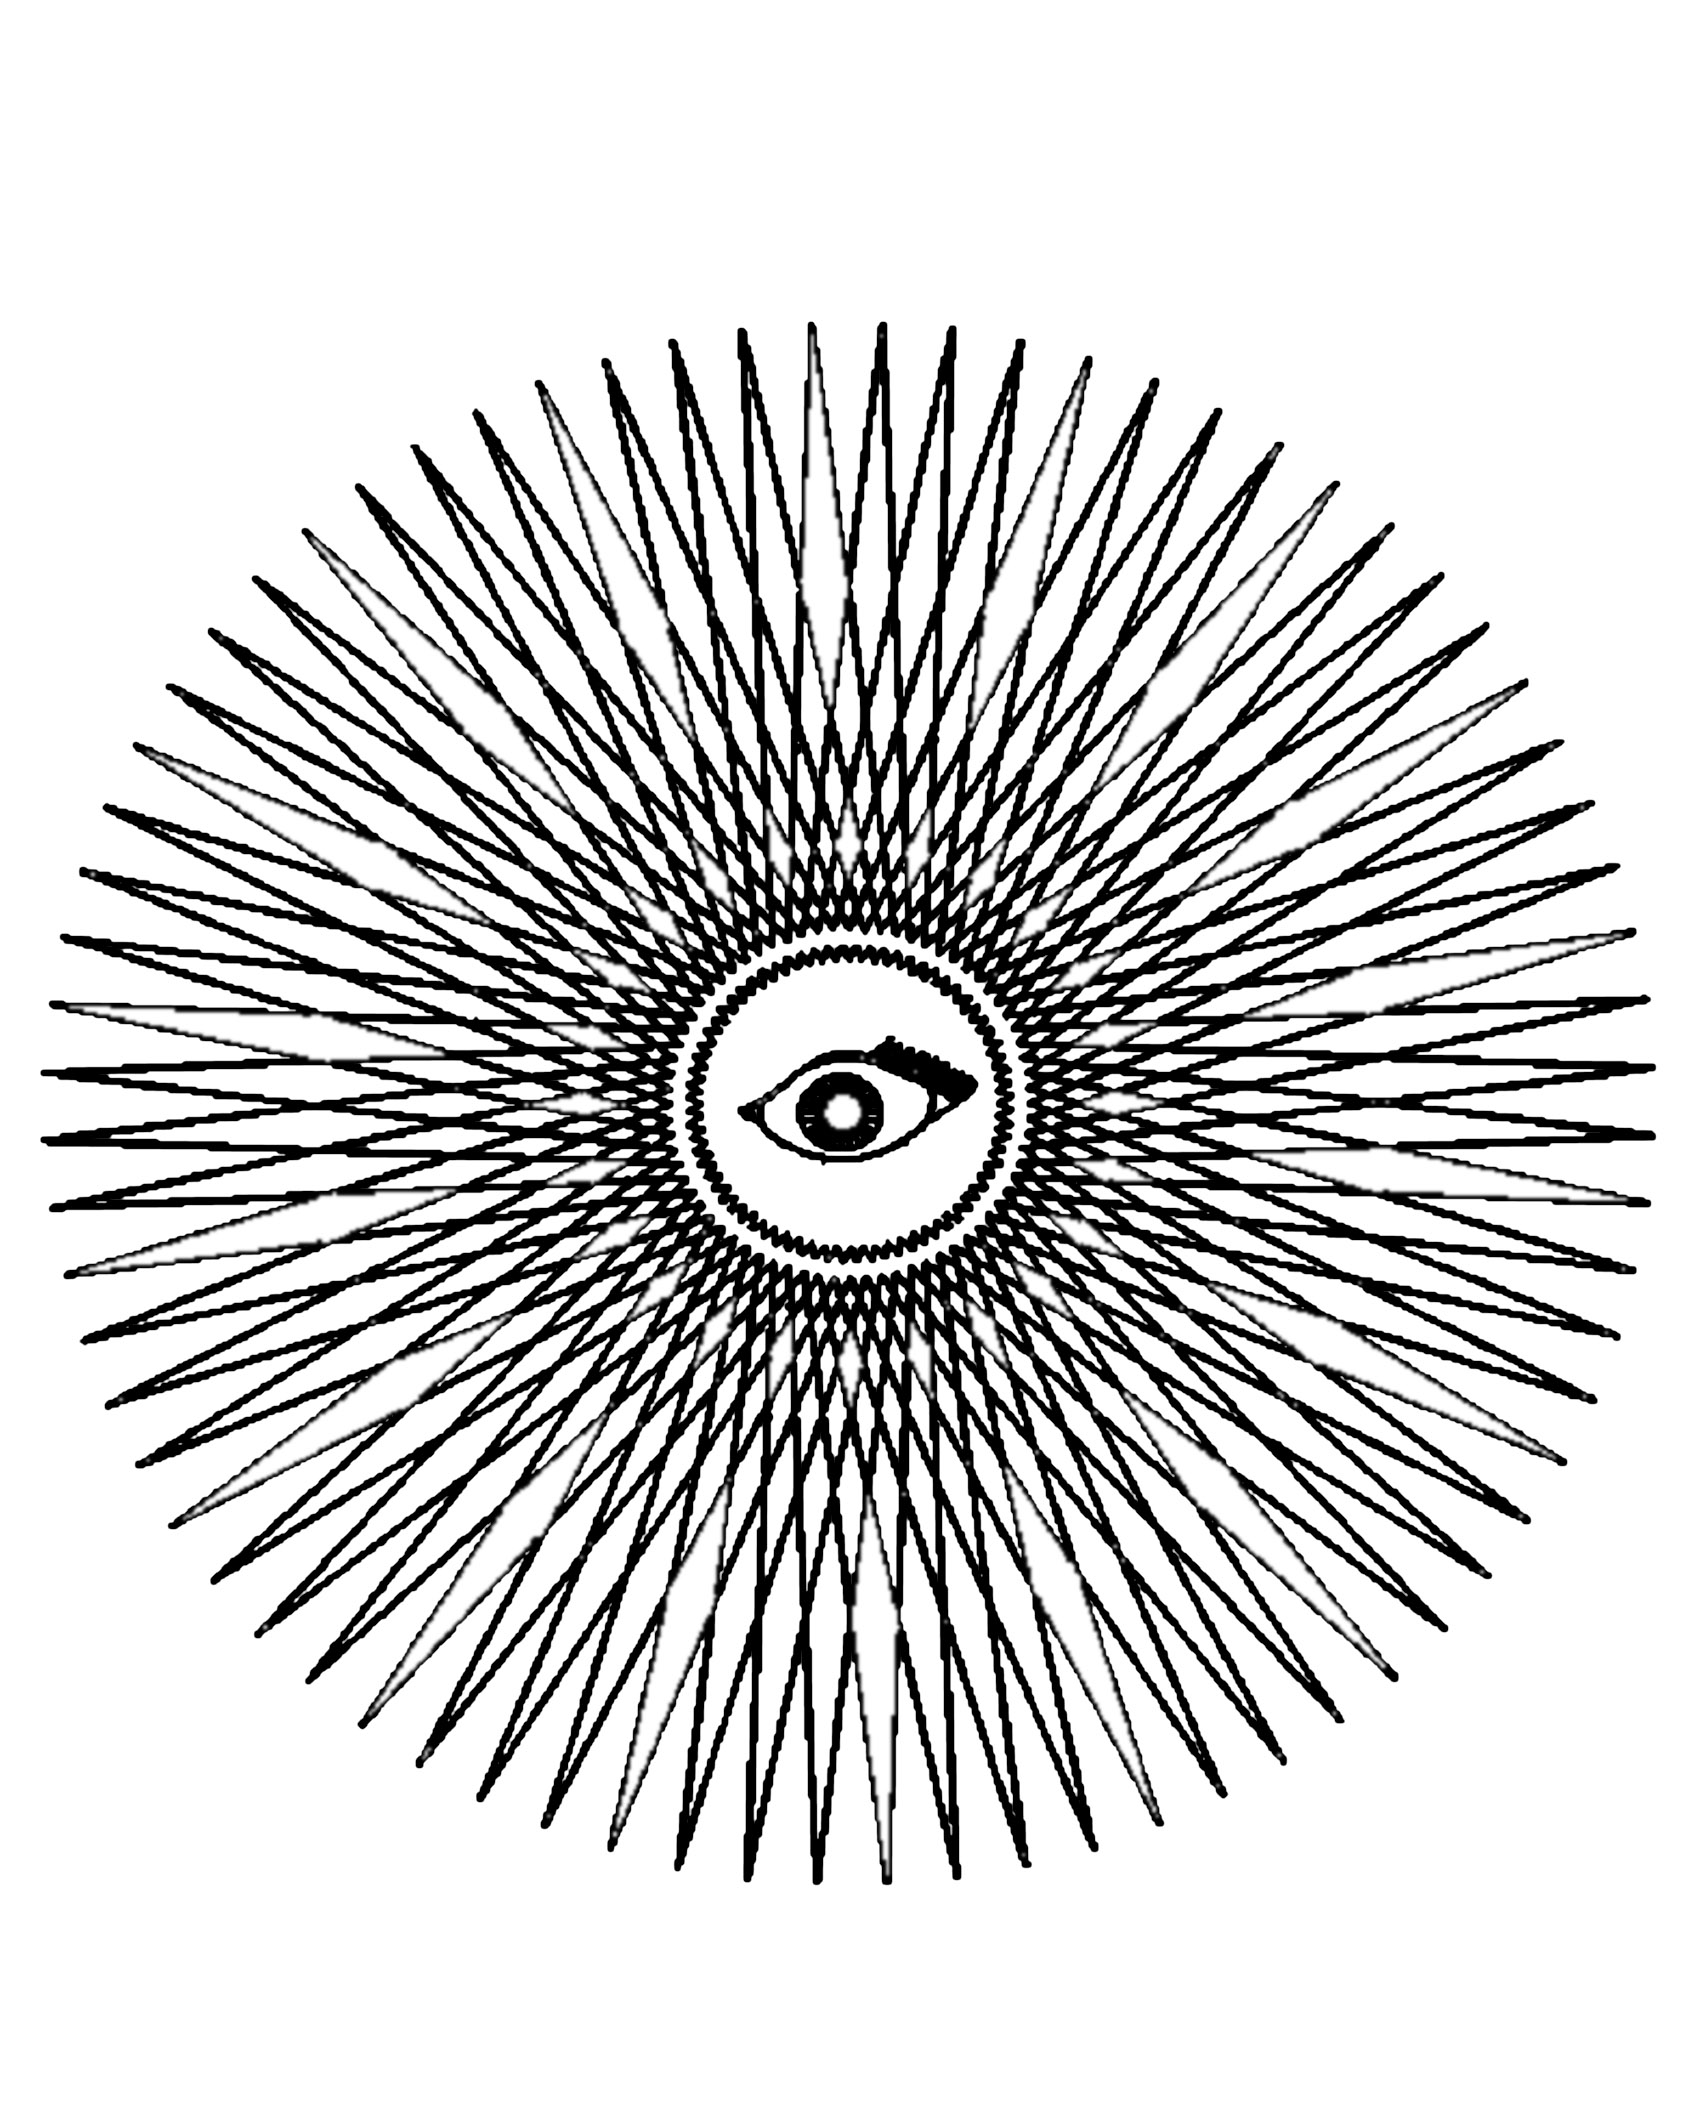 Mandala à télcharger assez mystique avec un œil au centre ainsi qu'une succession de losange.